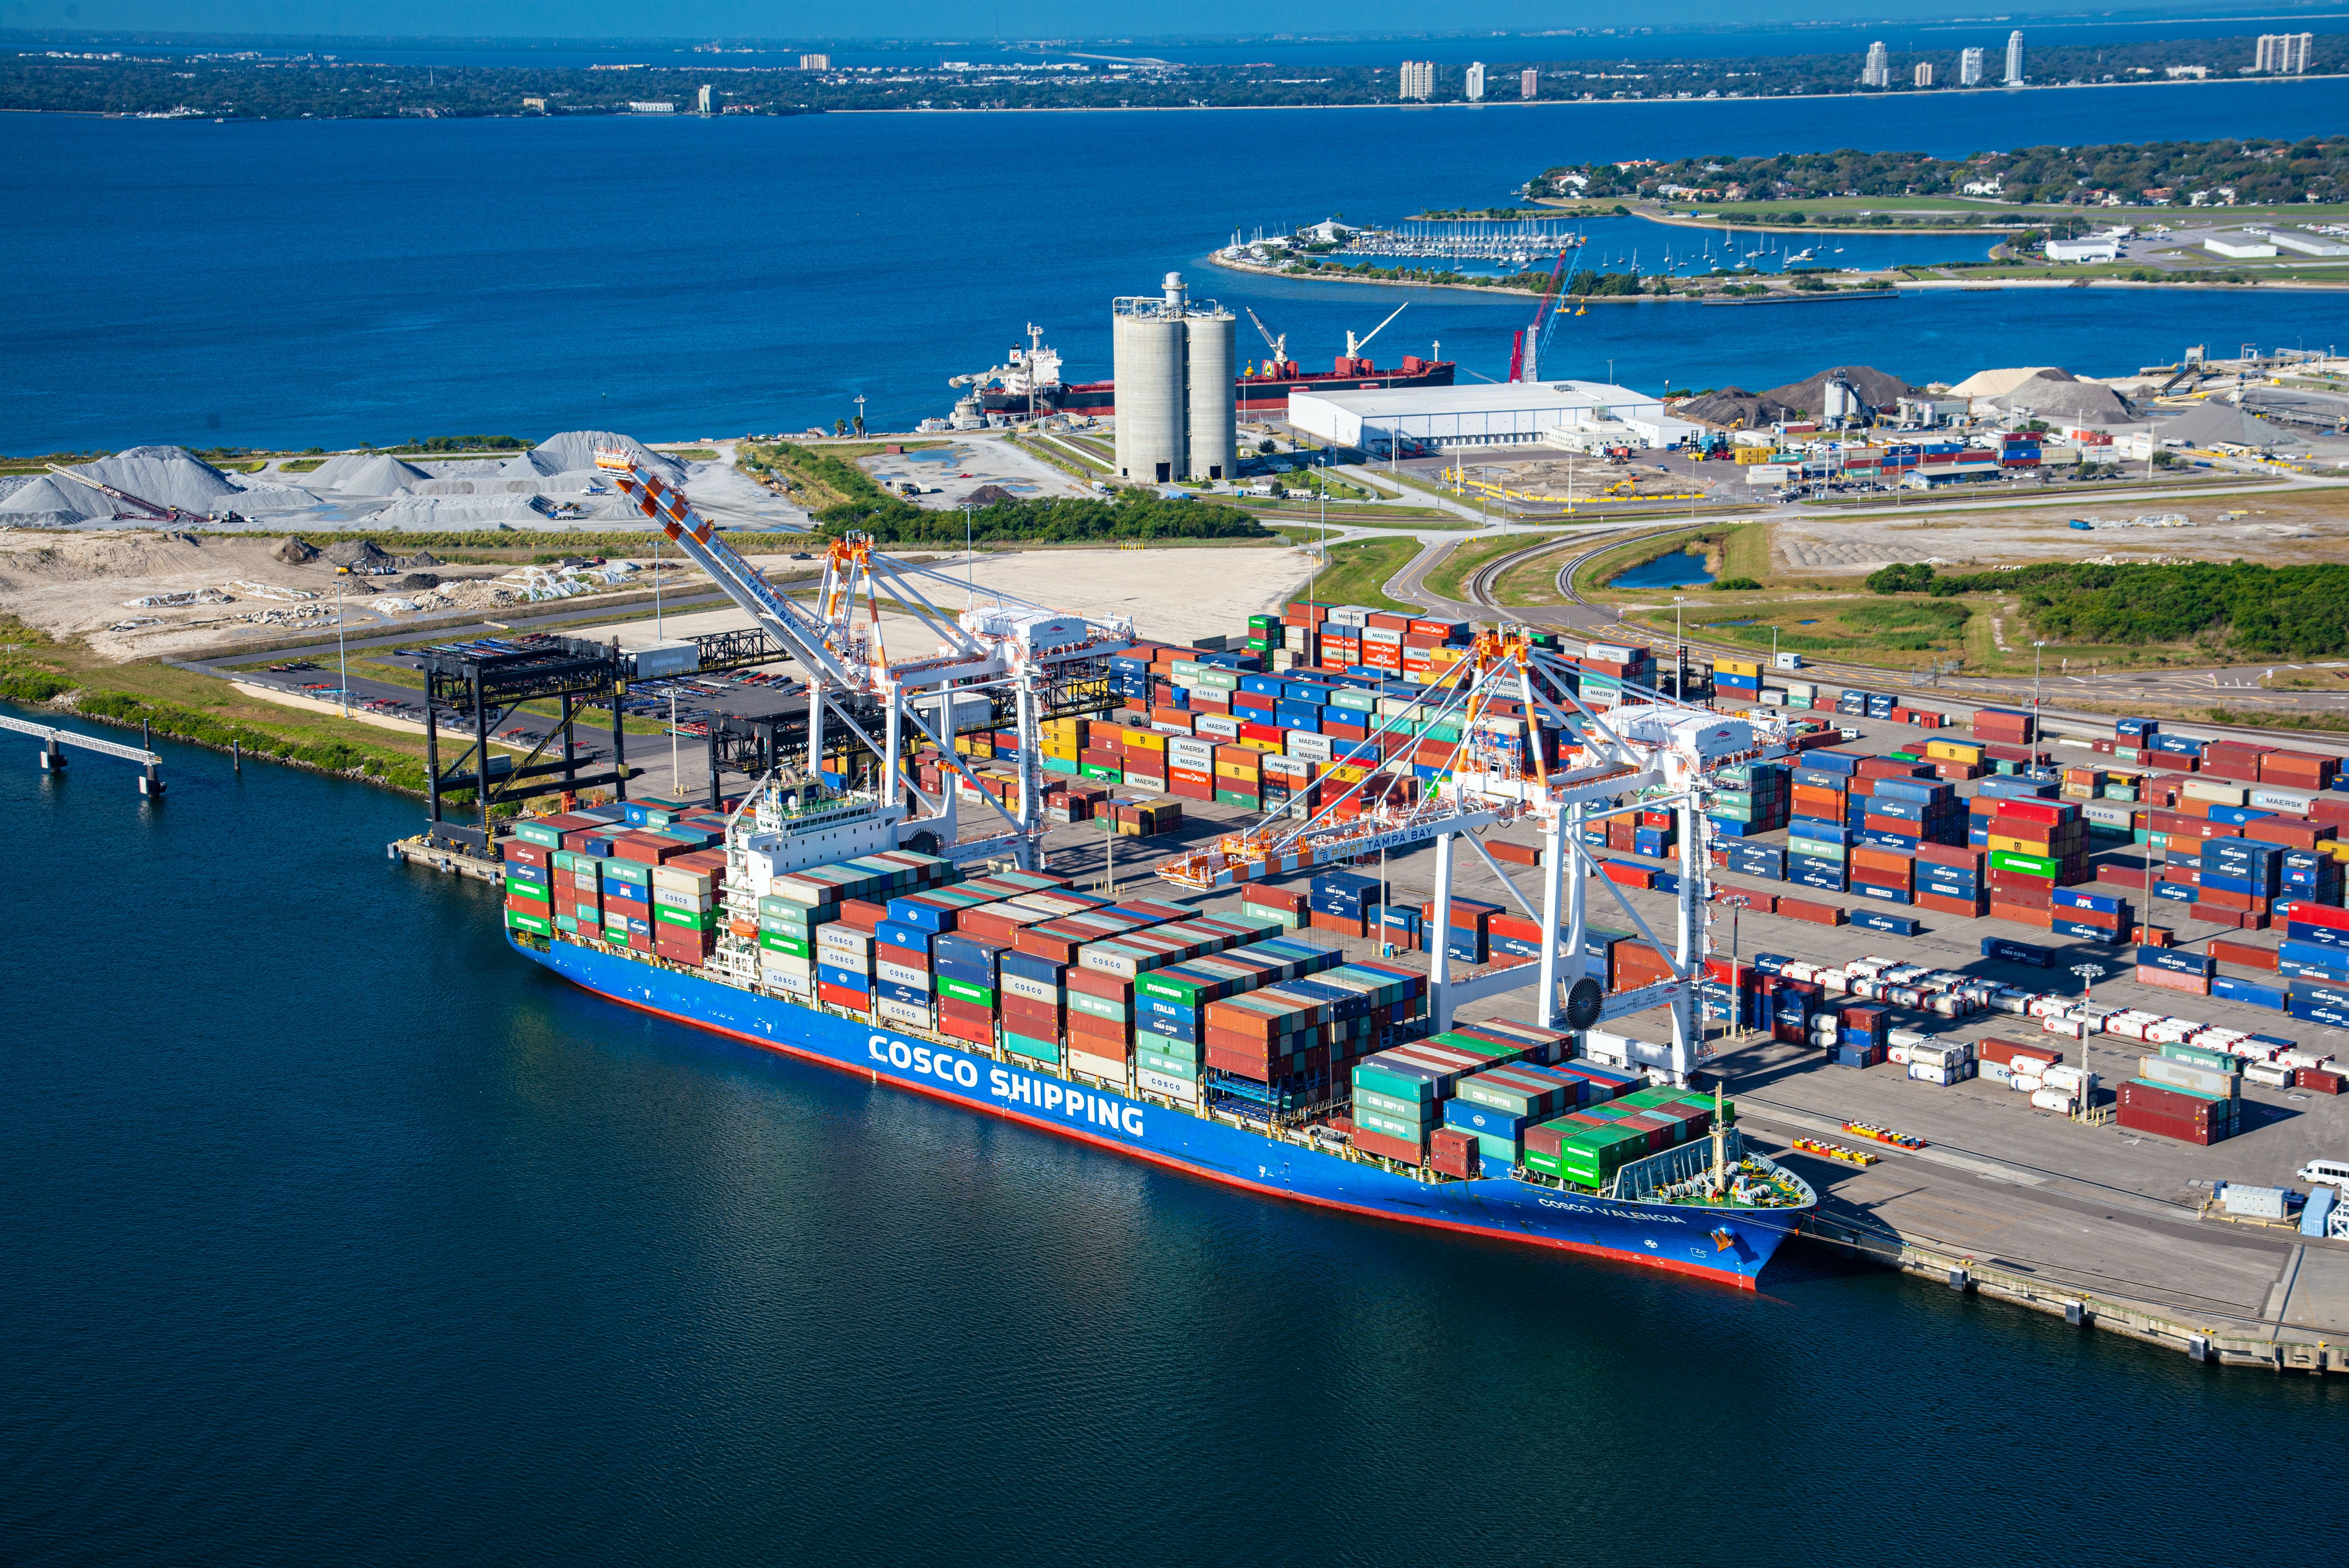 Cosco Shipping at Port Tampa Bay